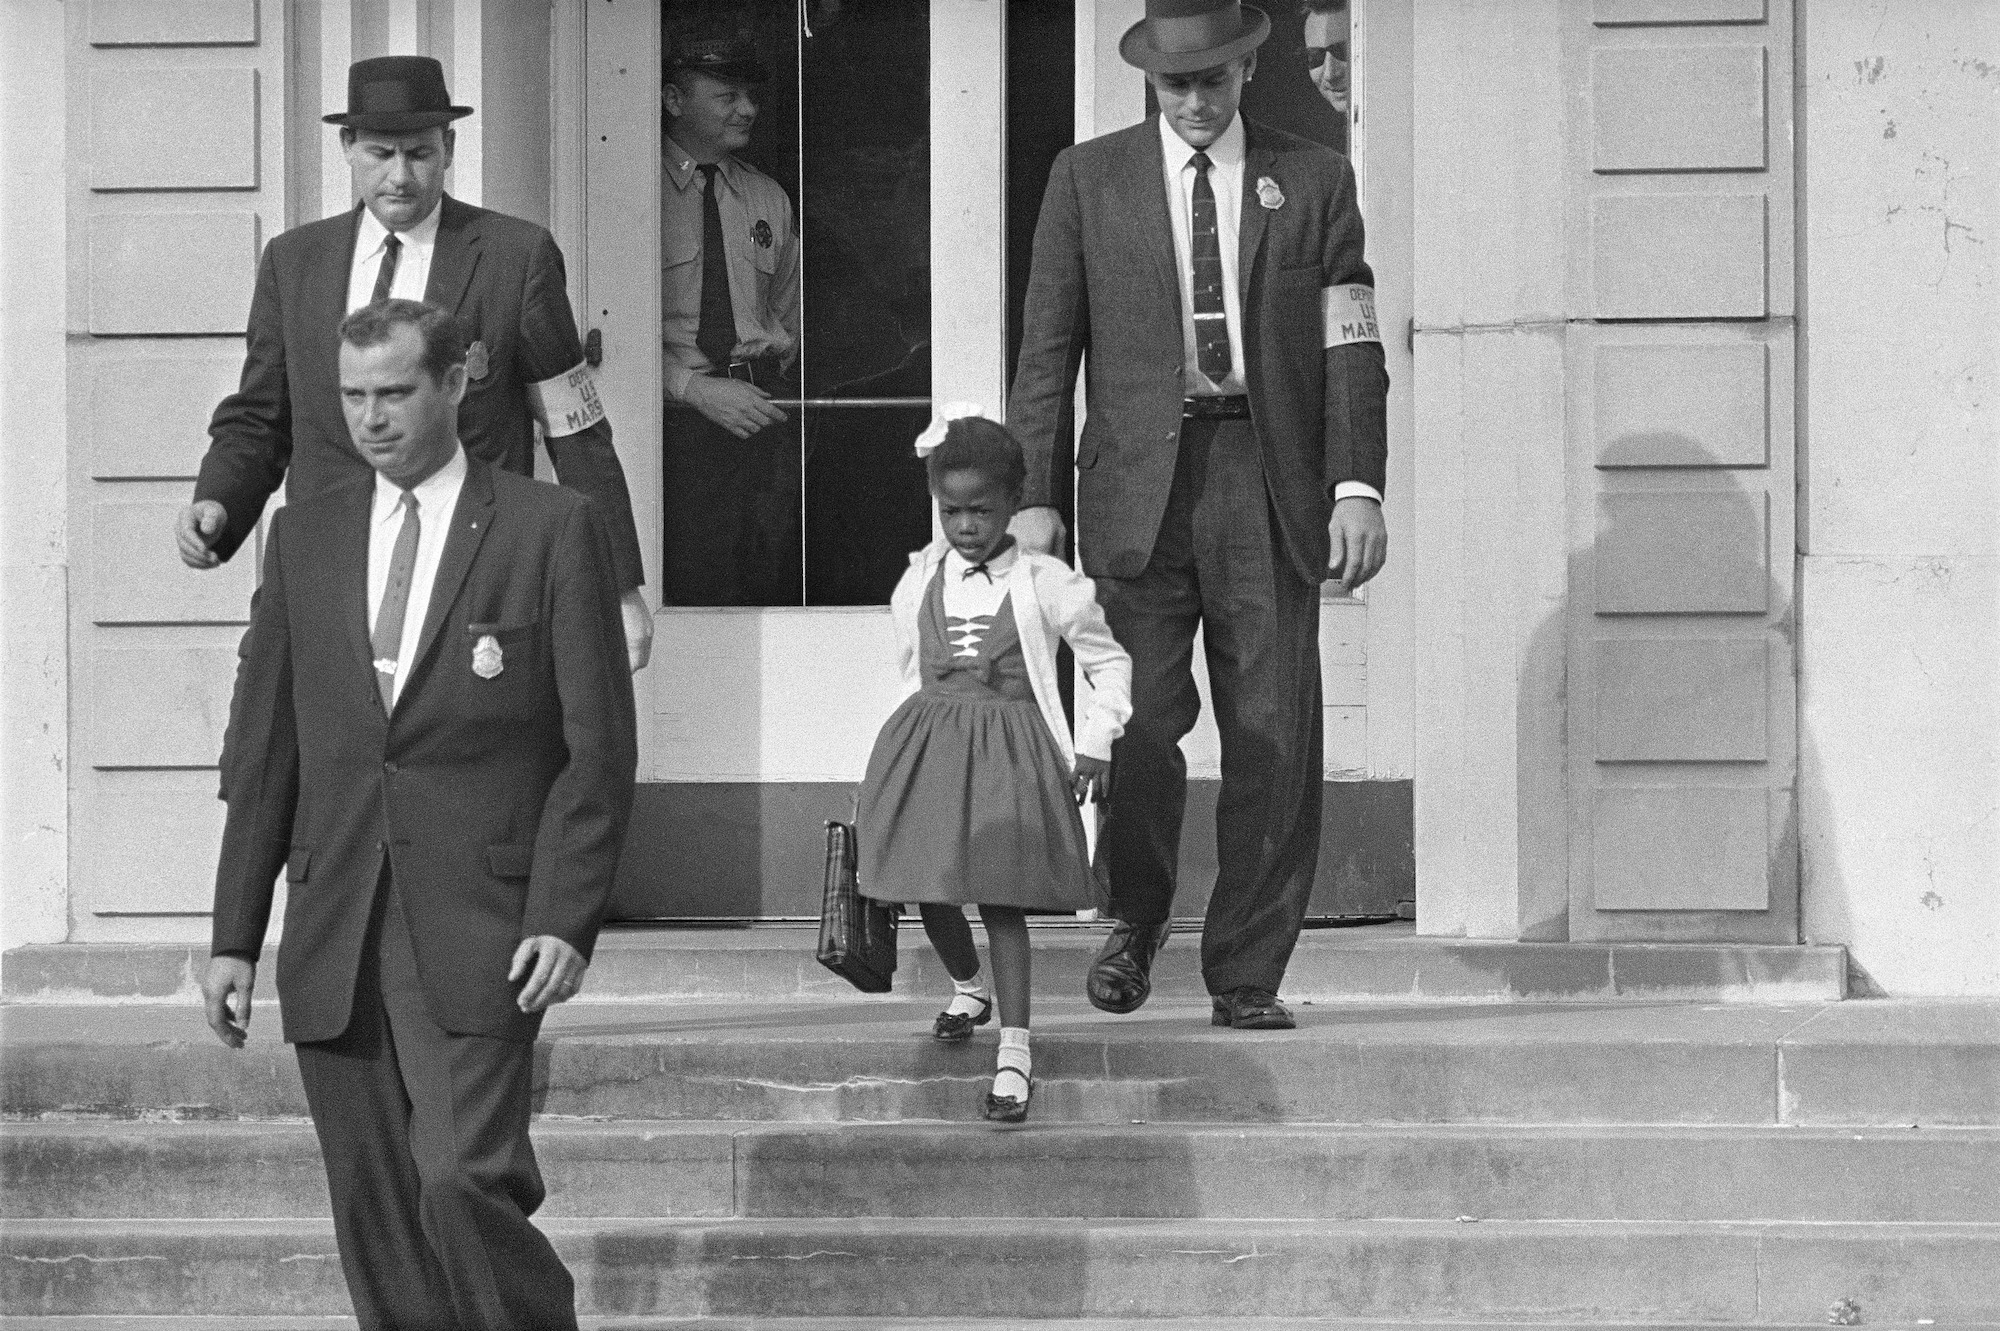 ‘Ruby Bridges’ movie under review by Florida school district after parent complaint